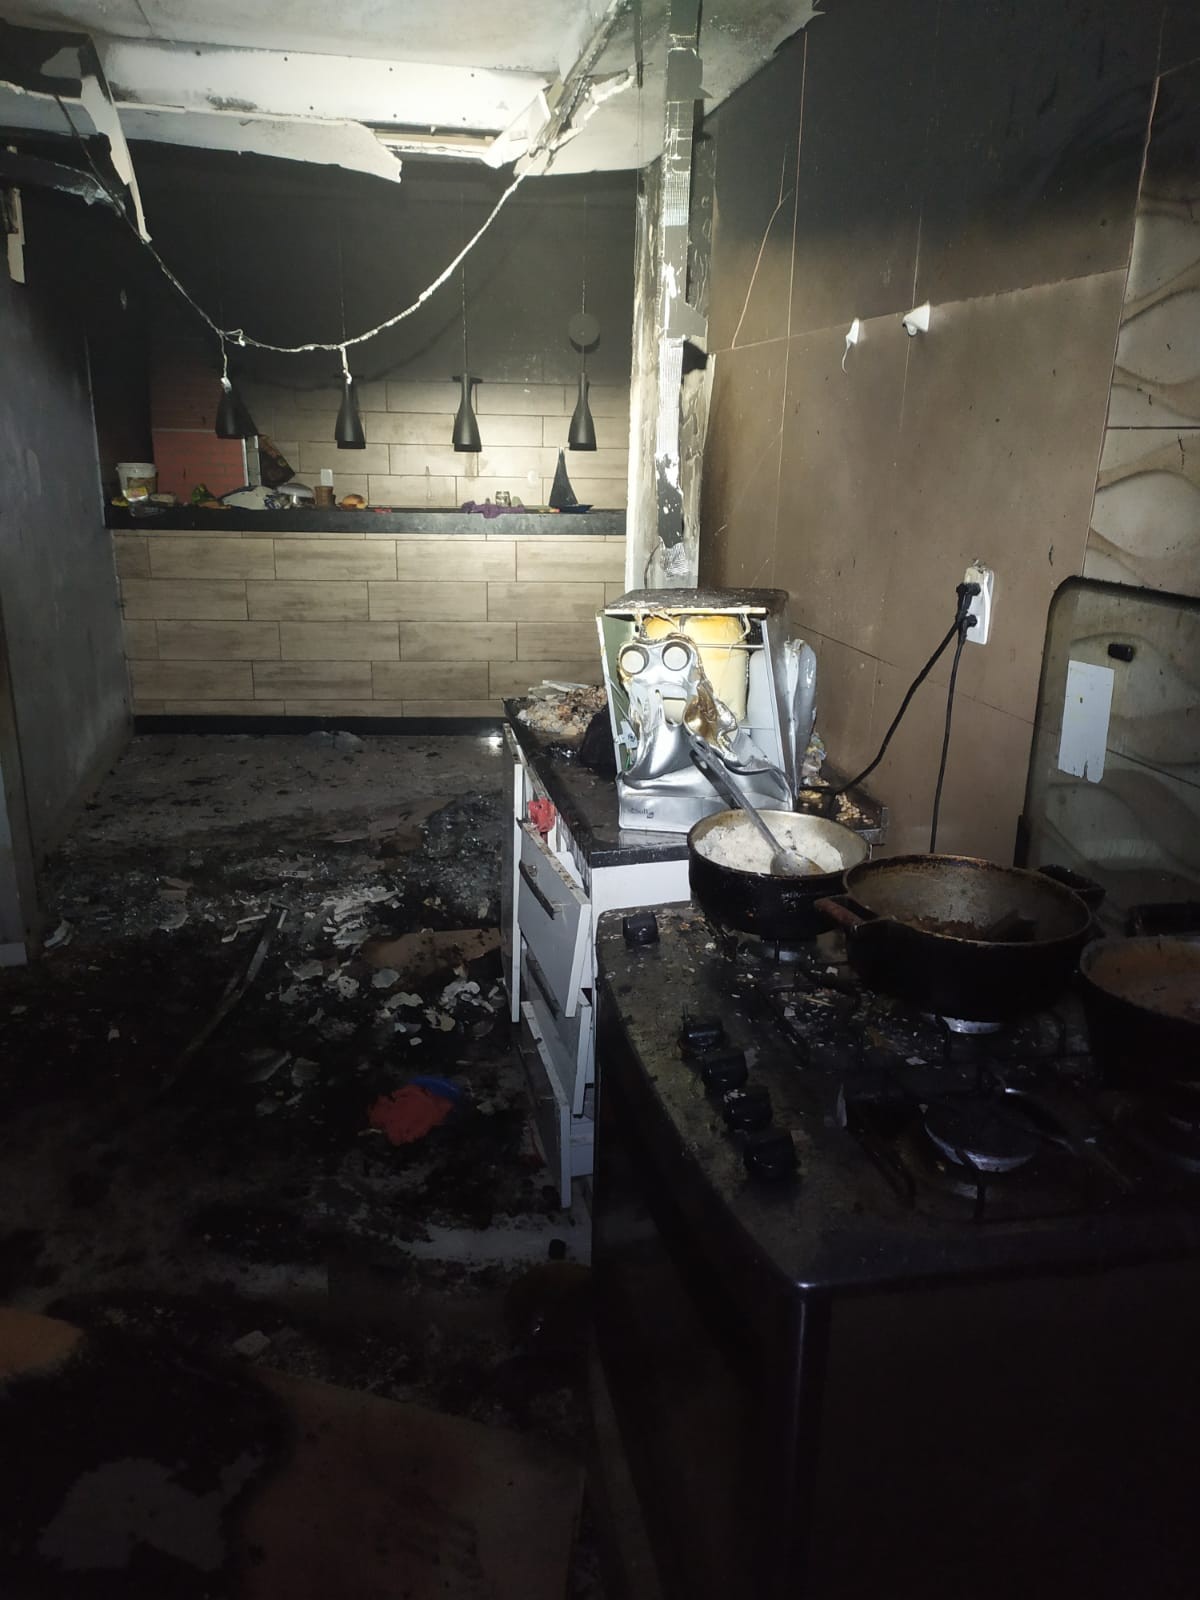 Curto-circuito em geladeira pode ter provocado incêndio em casa com quatro crianças sozinhas em Araguari